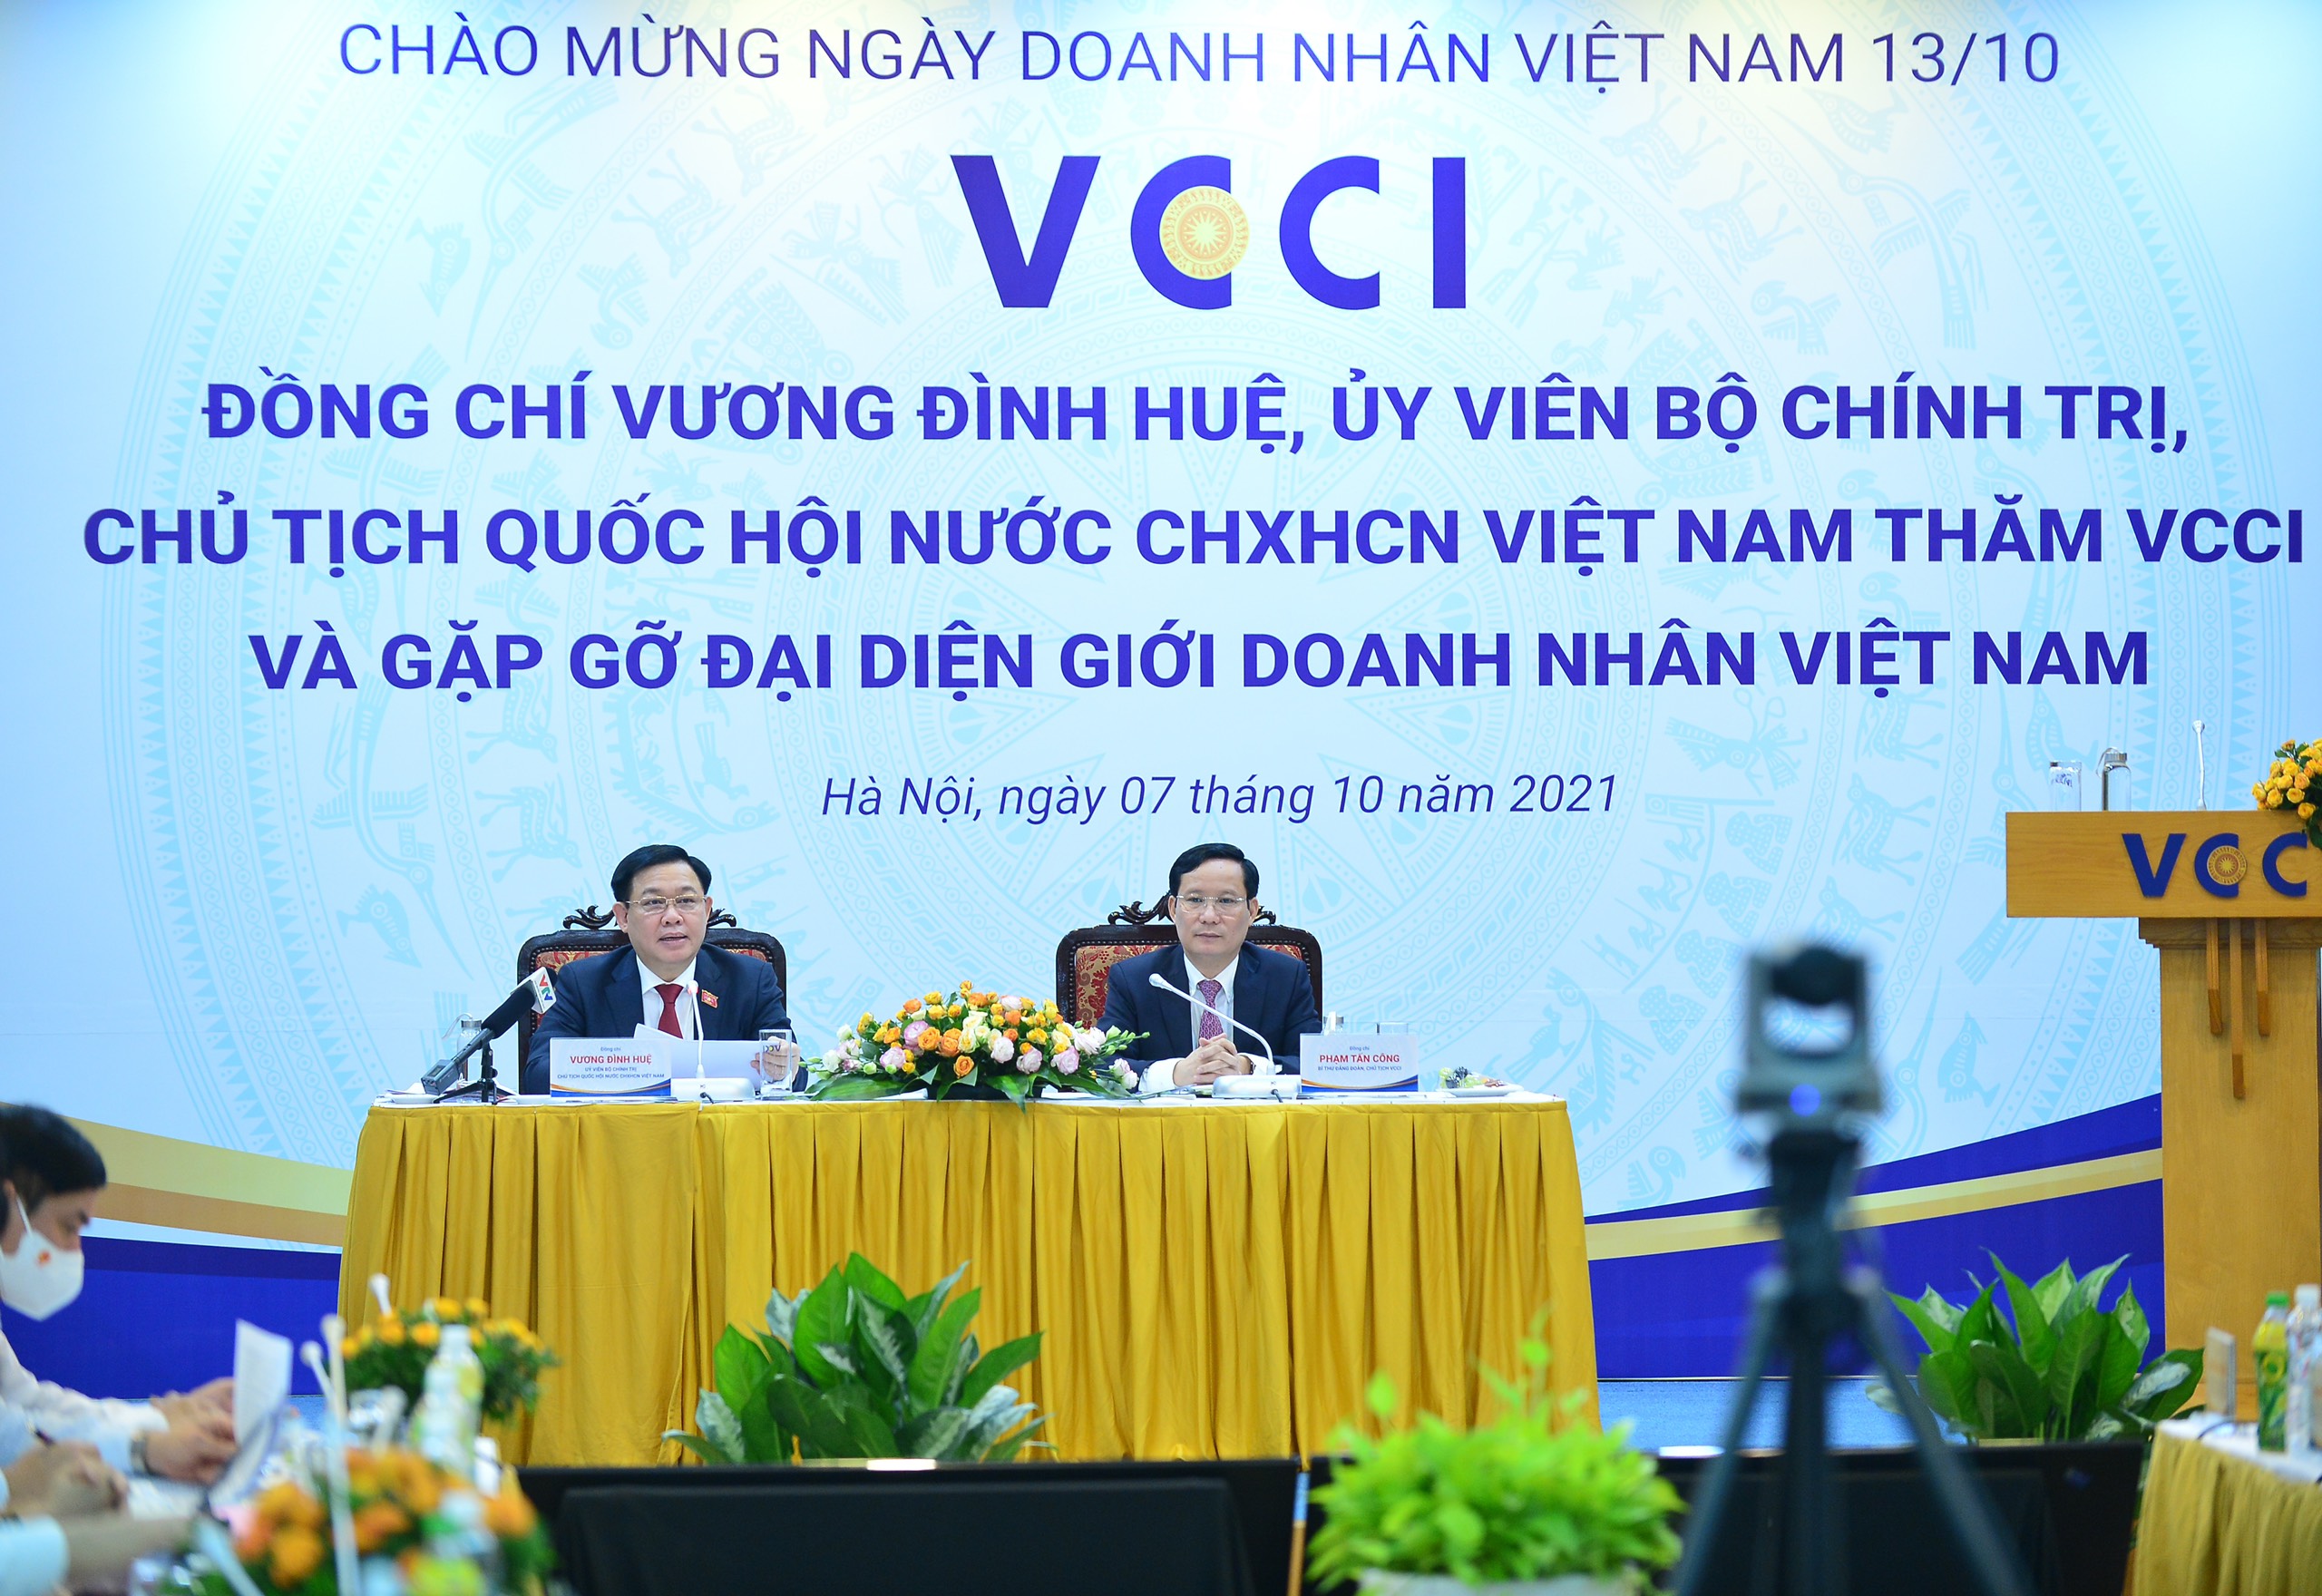 Chủ tịch Quốc hội Vương Đình Huệ thăm VCCI và gặp gỡ đại diện giới doanh nhân Việt Nam hồi tháng 10/2021